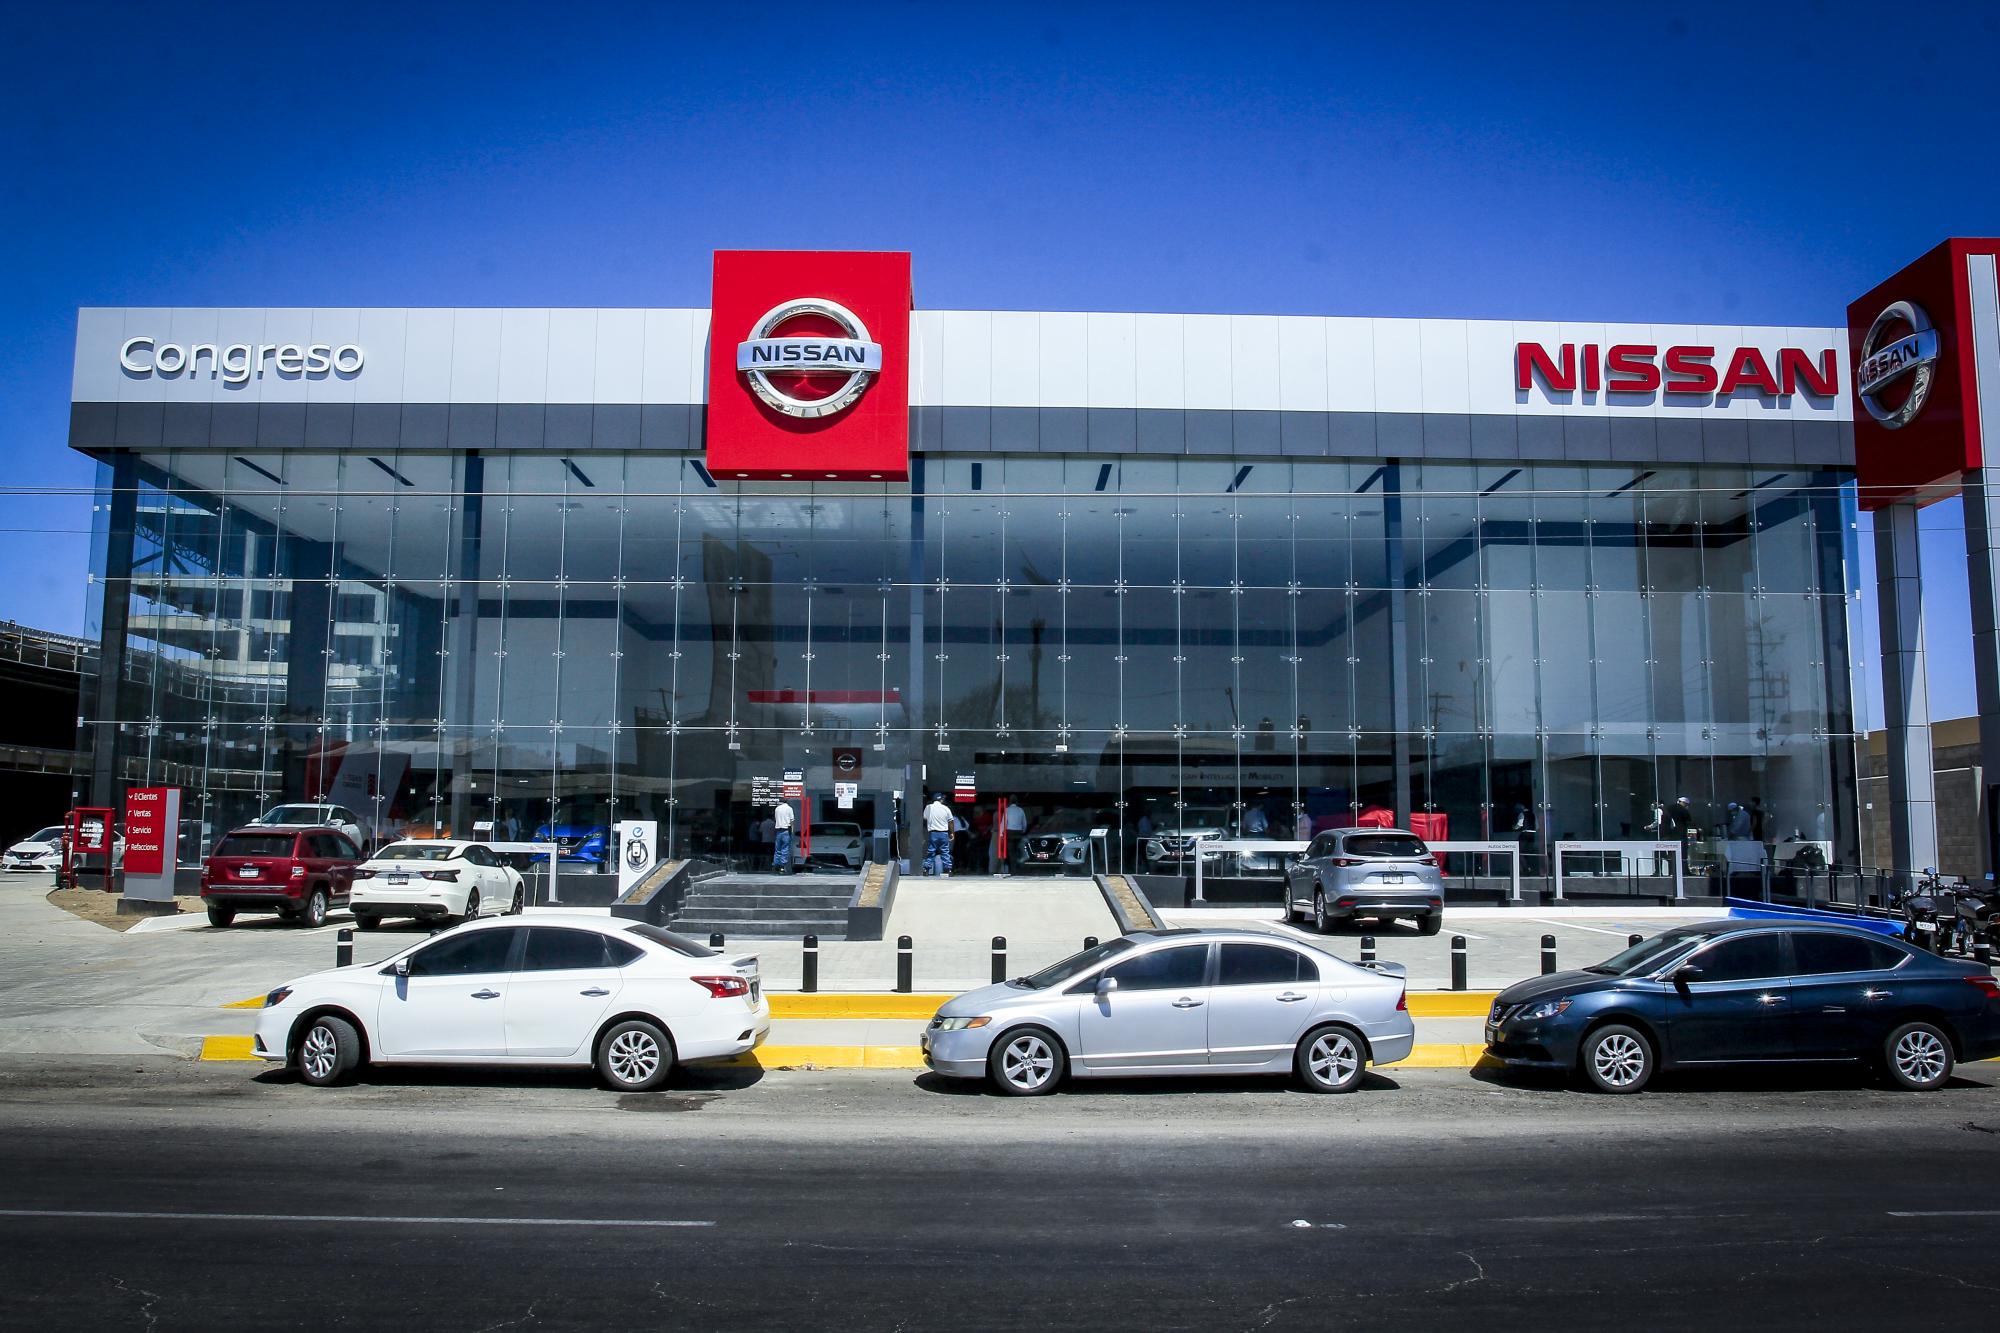 $!Arranca operaciones la nueva agencia Nissan Congreso en Culiacán